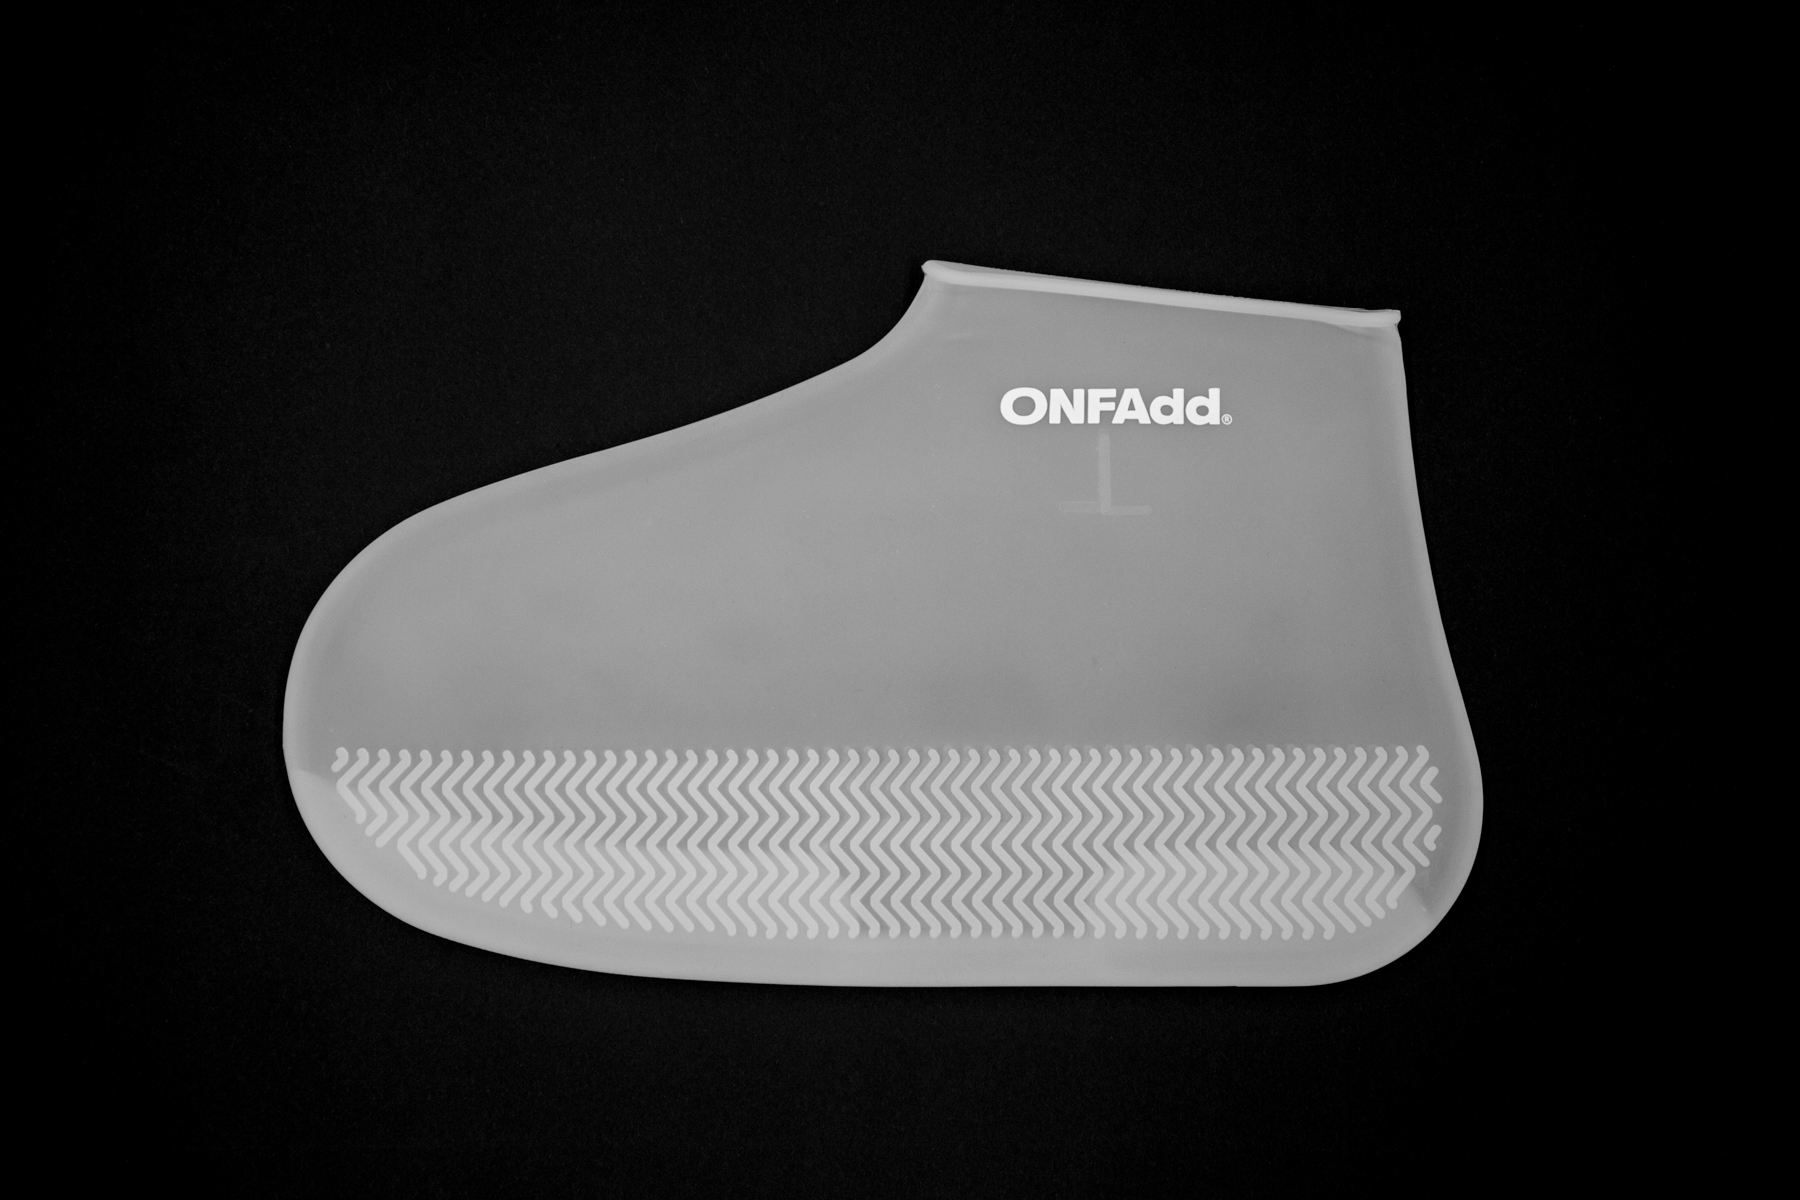 ONFAddからフットレインウェア「RAIN SOCKS」の新シリーズ登場 着用しているスニーカーが浮かび上がる「RAIN SOCKS